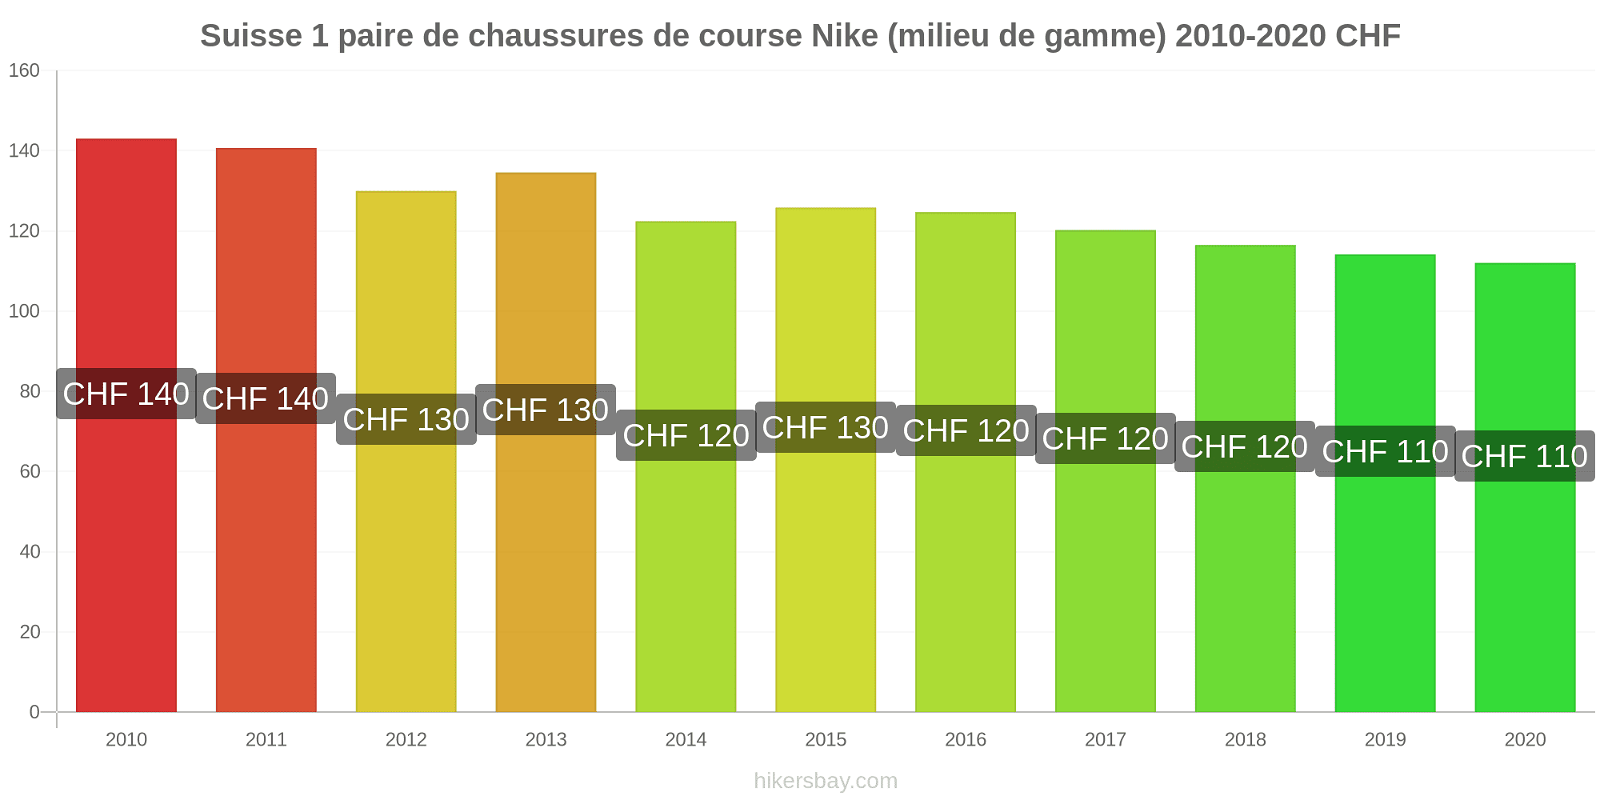 Suisse changements de prix 1 paire de chaussures de course Nike (milieu de gamme) hikersbay.com